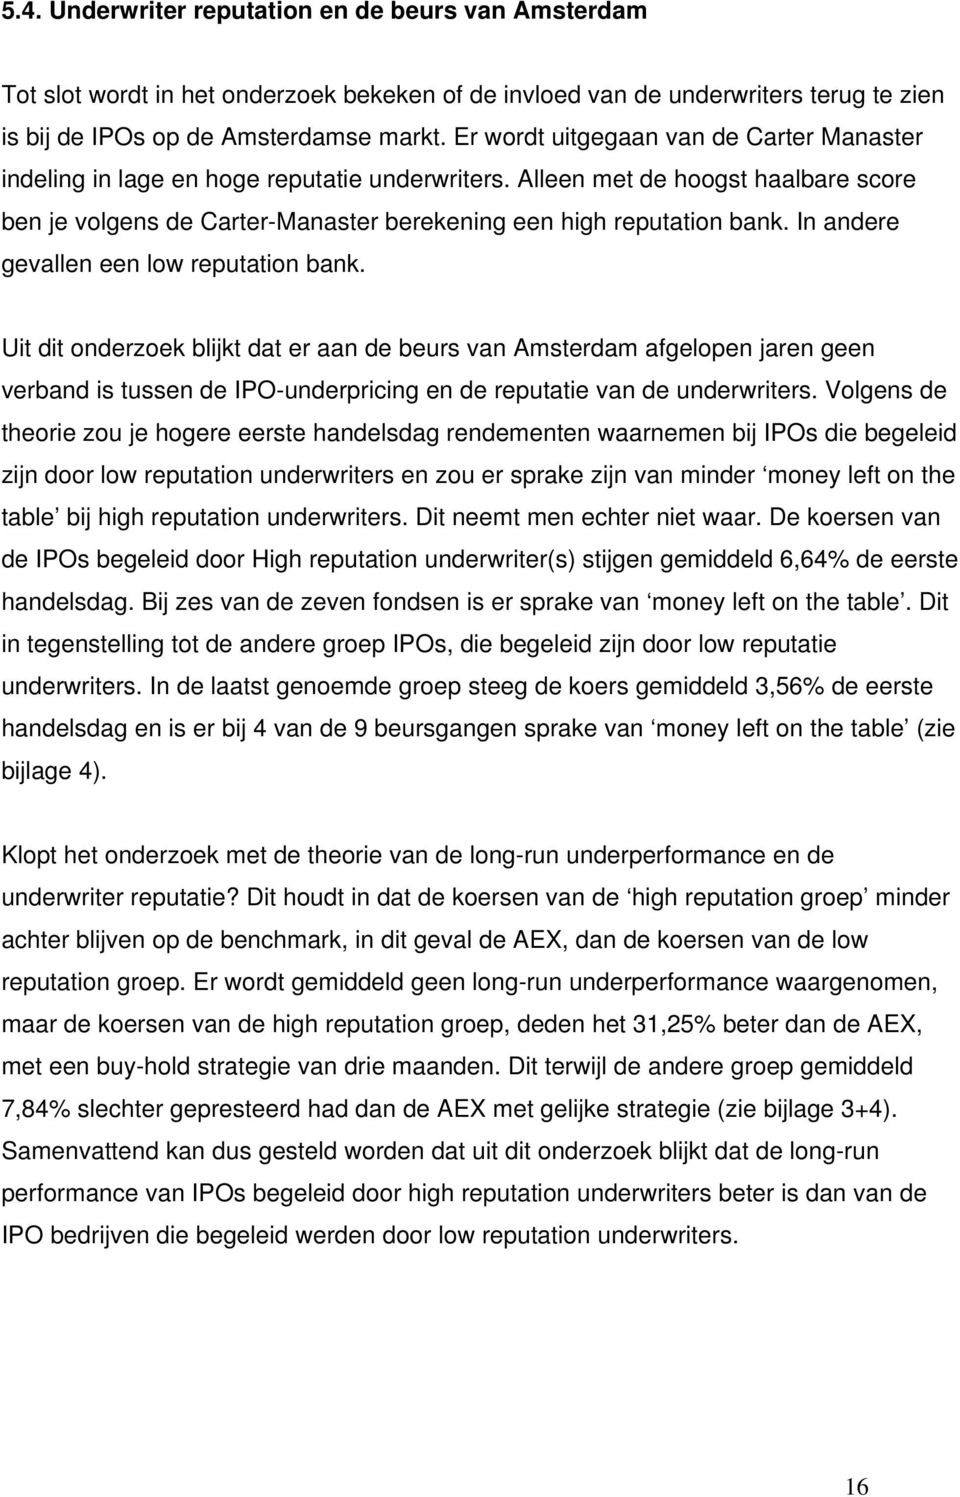 In andere gevallen een low reputation bank. Uit dit onderzoek blijkt dat er aan de beurs van Amsterdam afgelopen jaren geen verband is tussen de IPO-underpricing en de reputatie van de underwriters.